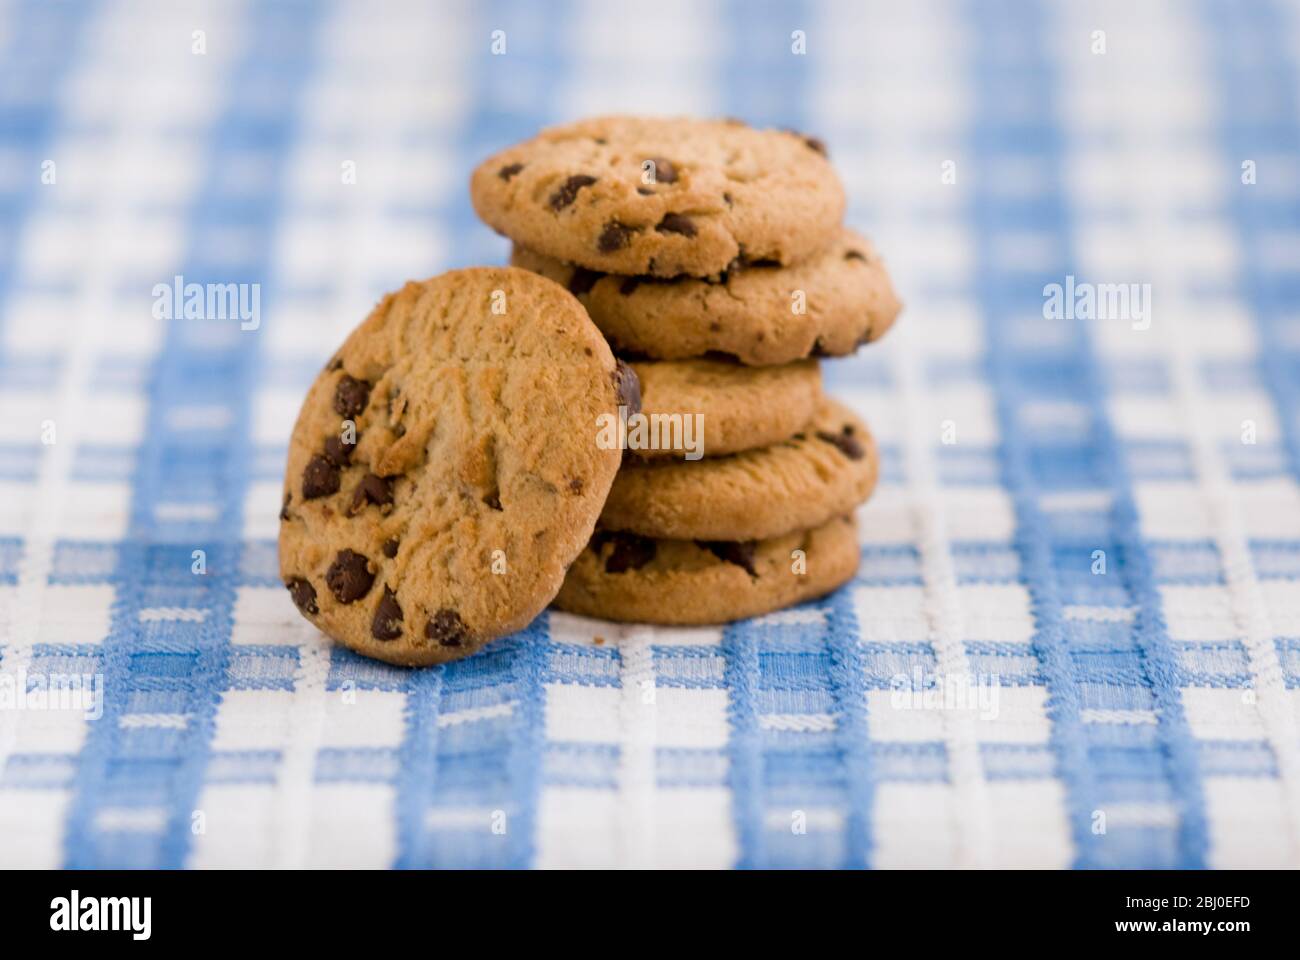 Stapel von Schokoladenchip-Cookies aus dem Supermarkt - Stockfoto